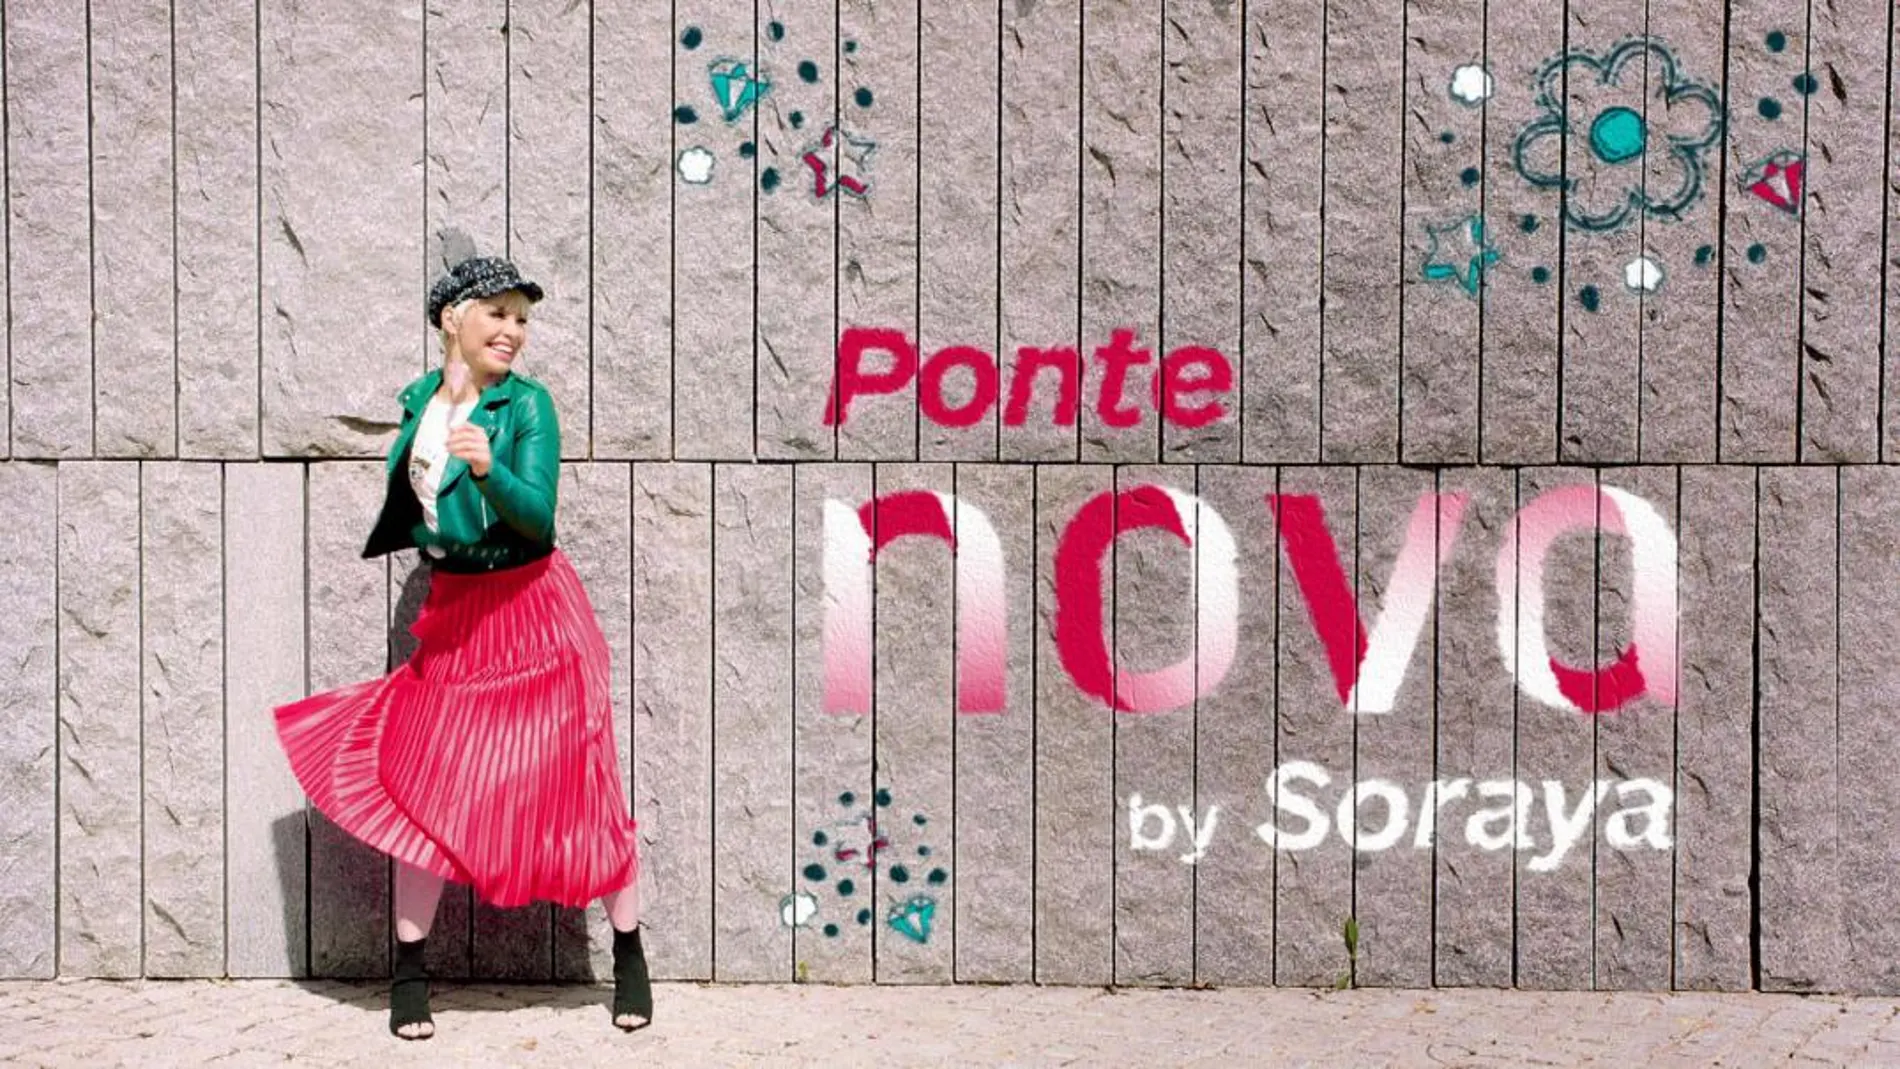 Nova lanza novedades y más estrenos con Soraya Arnelas como embajadora